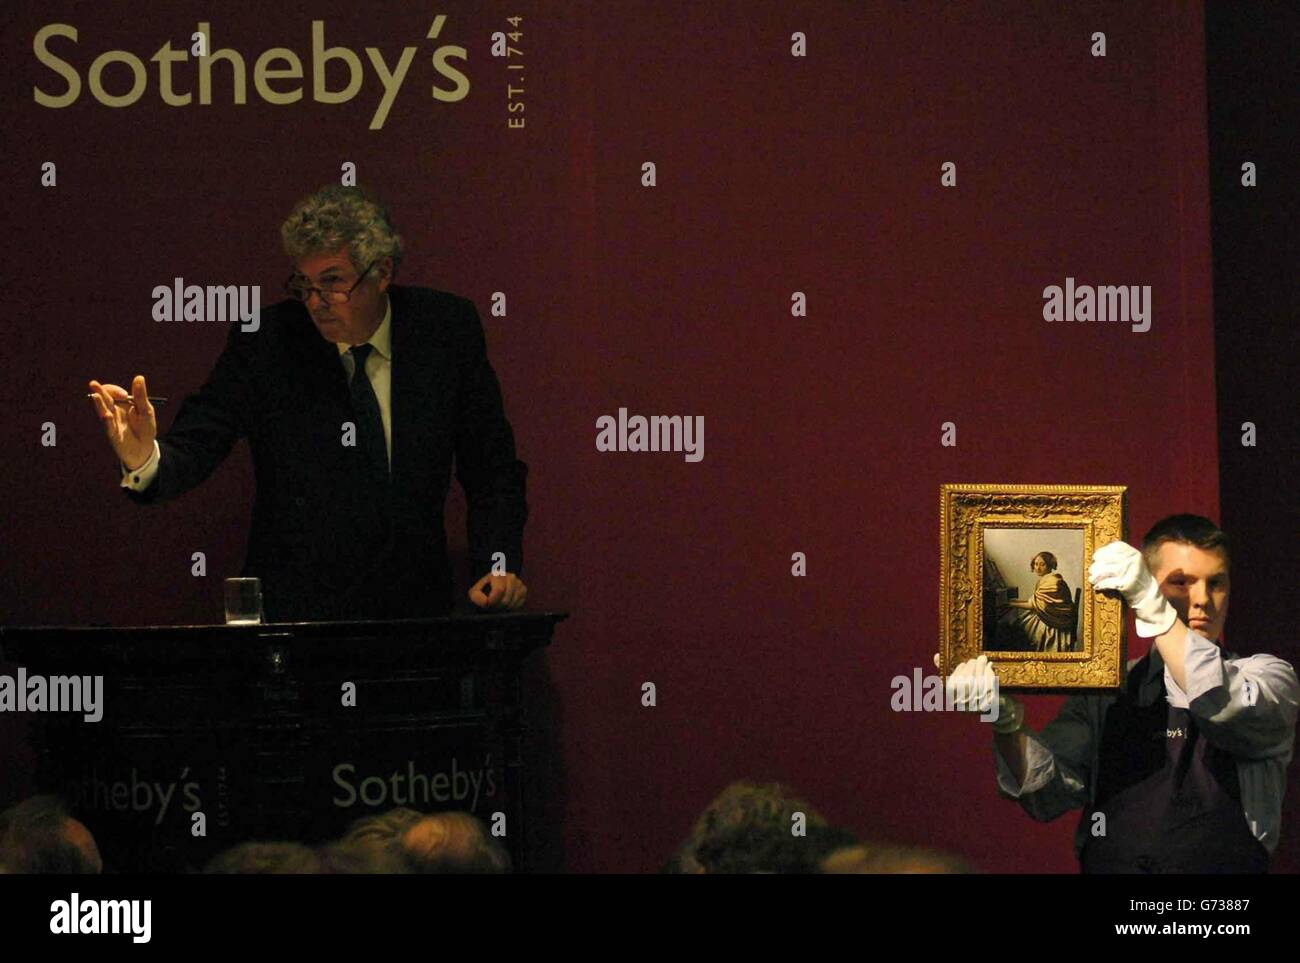 Un raro dipinto del vecchio maestro olandese Johannes Vermeer che viene messo all'asta a Sotheby's nel centro di Londra. La pittura ha recuperato più di 16 milioni quando è stato venduto a stasera. Il piccolo quadro, chiamato Young Woman seduto ai virginals, ha superato di gran lunga il prezzo di riserva di 3 milioni quando è andato sotto il martello a Sotheby's nel centro di Londra. È il primo dipinto di Vermeer ad essere messo in asta in più di 80 anni. Una portavoce di Sotheby's ha detto che è stato venduto ad un acquirente anonimo per 16,245,600, compreso il premio del compratore. Foto Stock